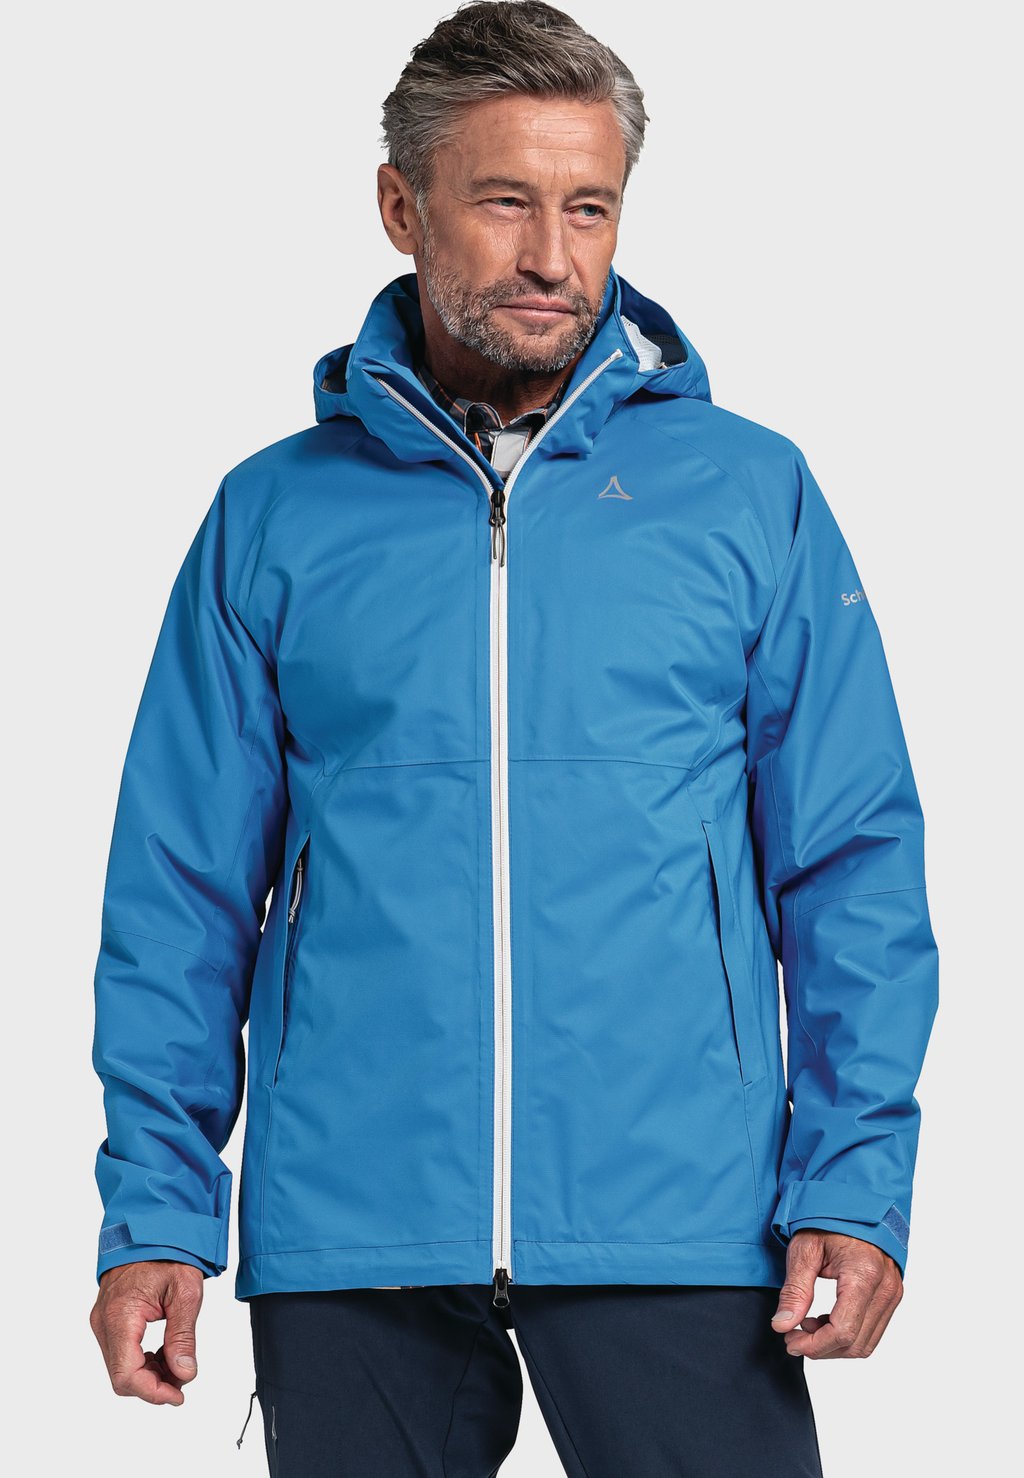 Дождевик/водоотталкивающая куртка Schöffel, цвет blau дождевик водоотталкивающая куртка eiriken luhta цвет dunkel blau